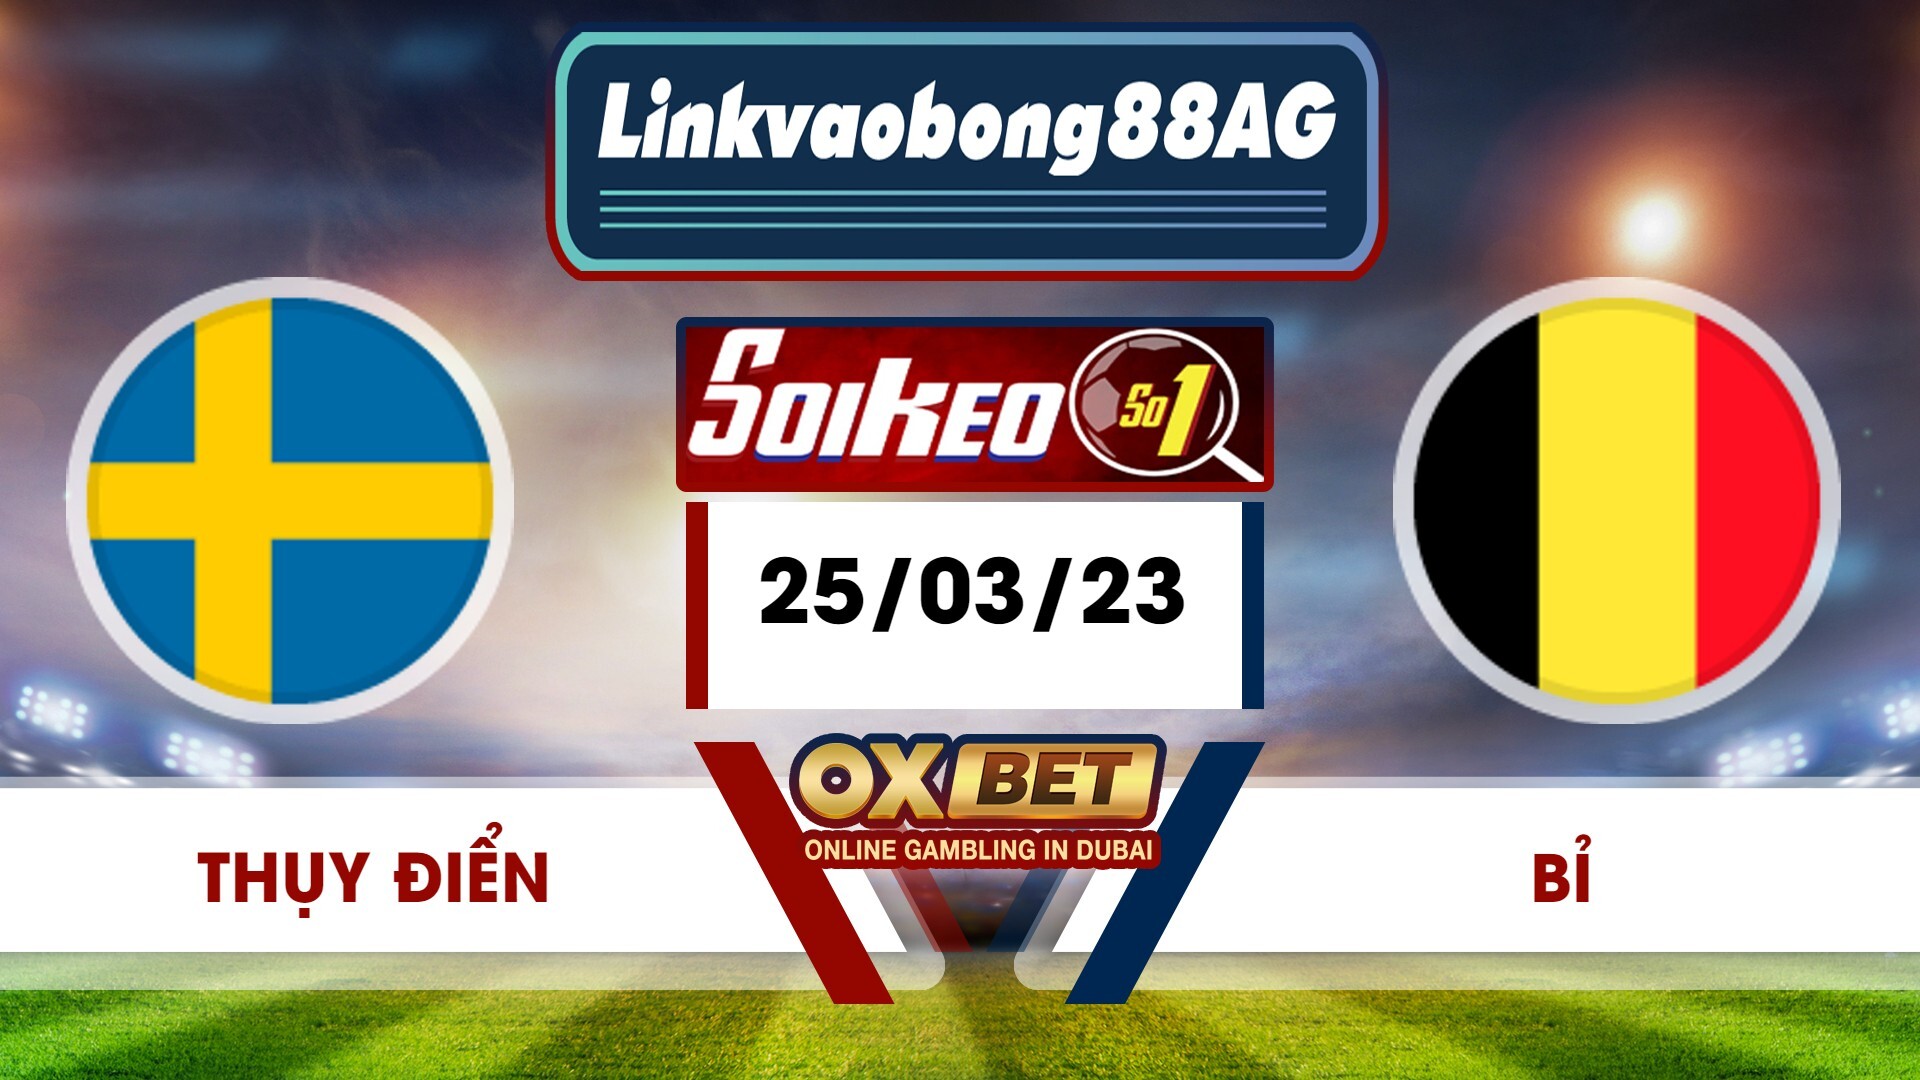 Soi kèo Bong88 Thụy Điển vs Bỉ – 25/03/2023 – 02h45 sáng